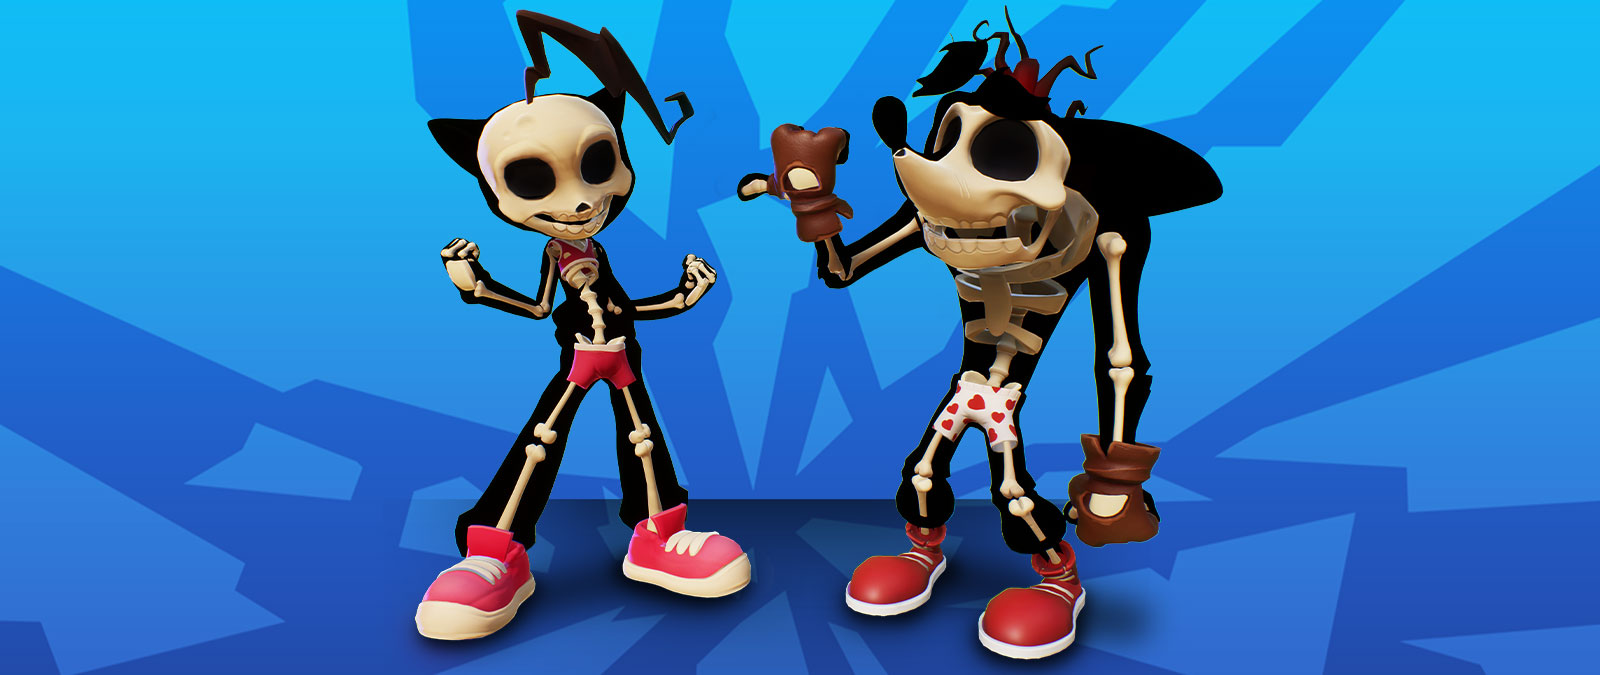 Os esqueletos de Crash e Coco em roupa interior.